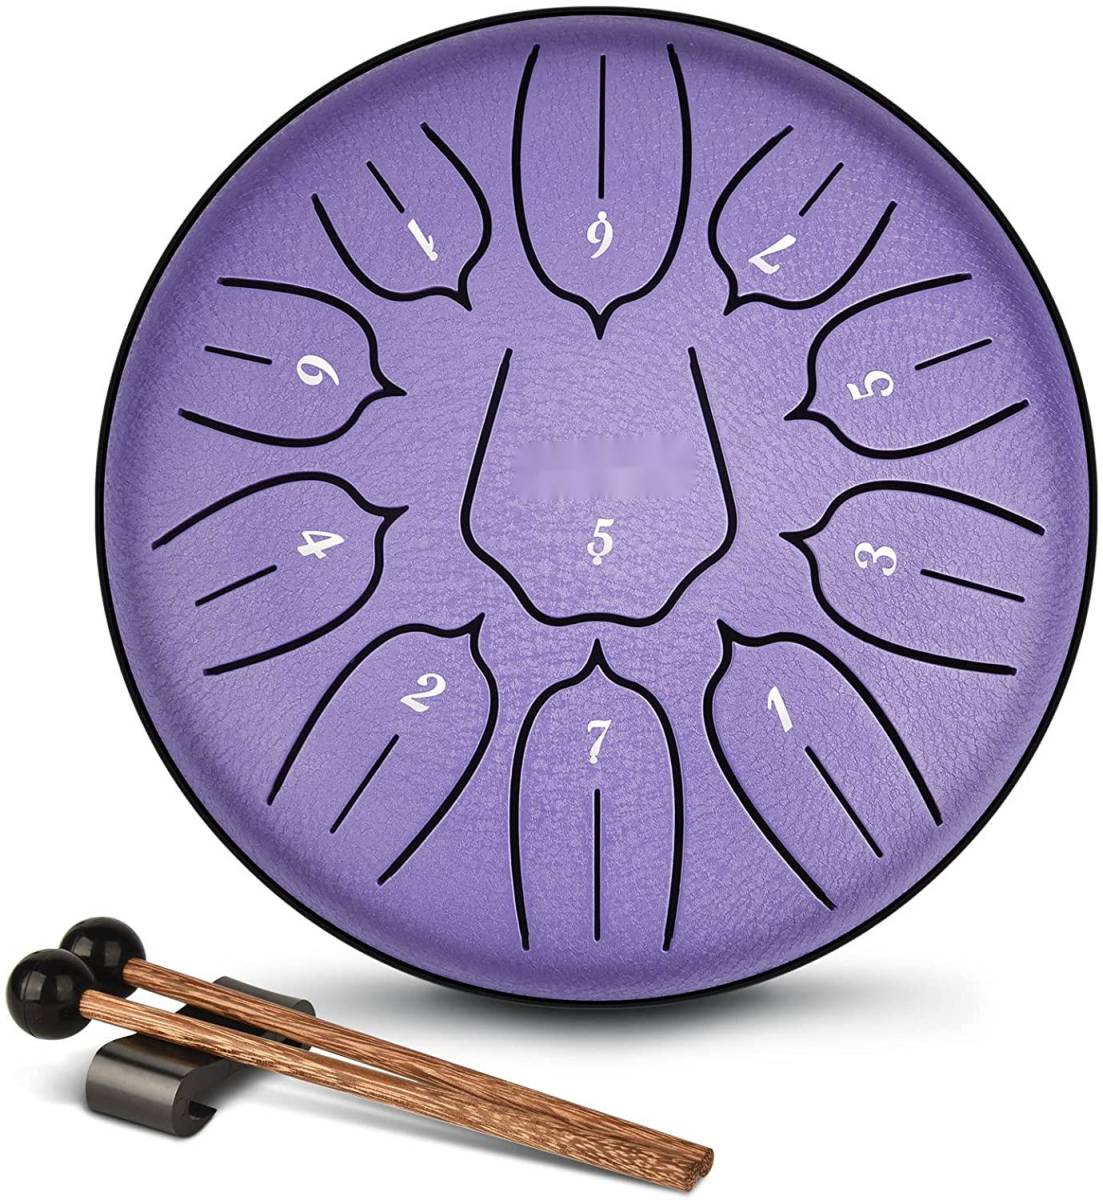 スリットドラム スチールタングドラム LEKATO 金属ドラム 11音 6インチ 打楽器 マレット 収納バッグ付き 瞑想 ヨガ 禅 (ラベンダーパープル_画像8